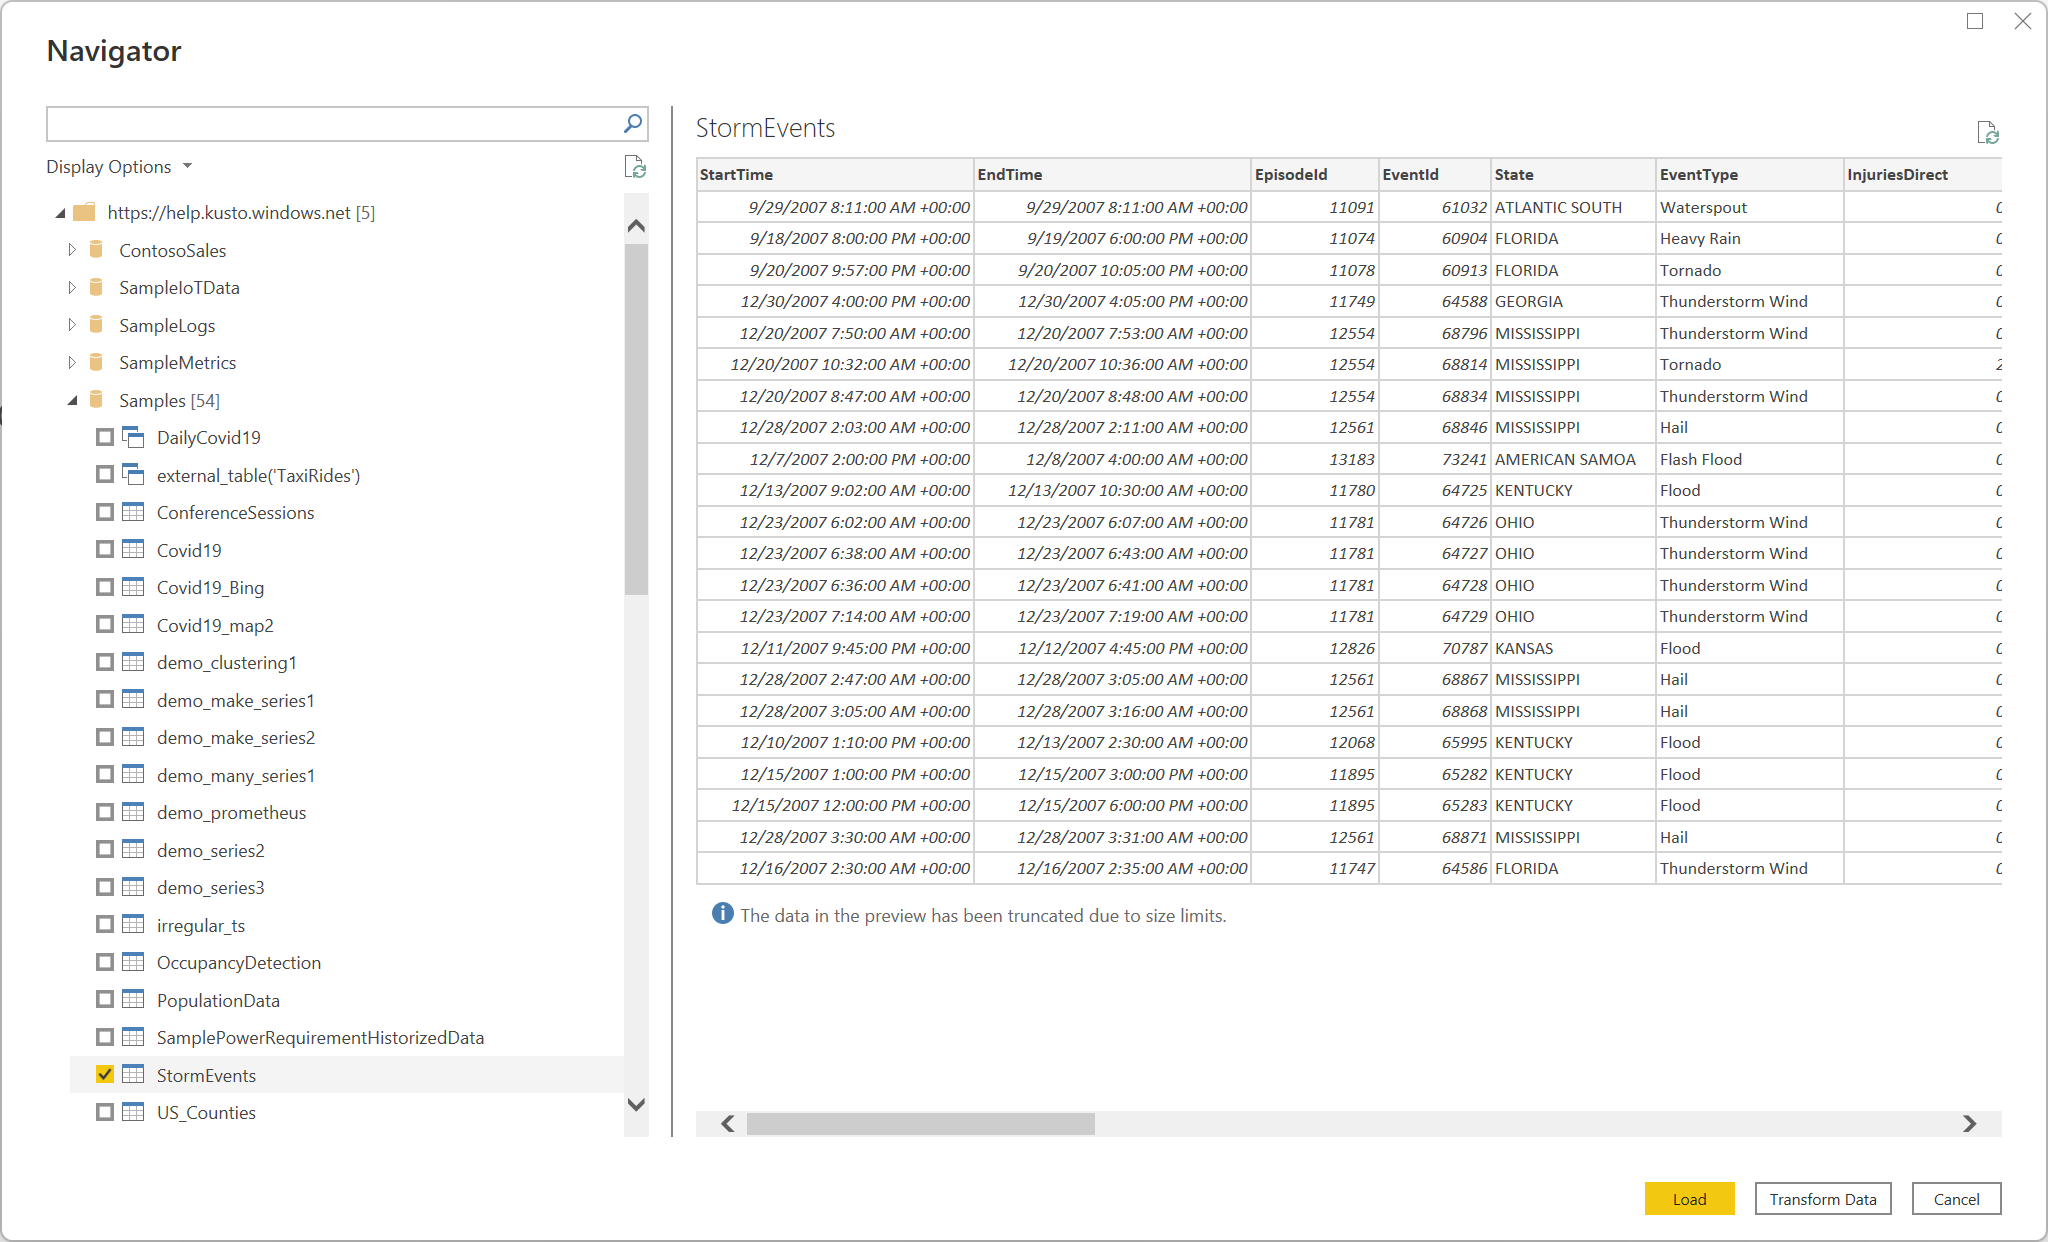 サンプル データベース内の StormEvents からのデータを含むナビゲーターのスクリーンショット。